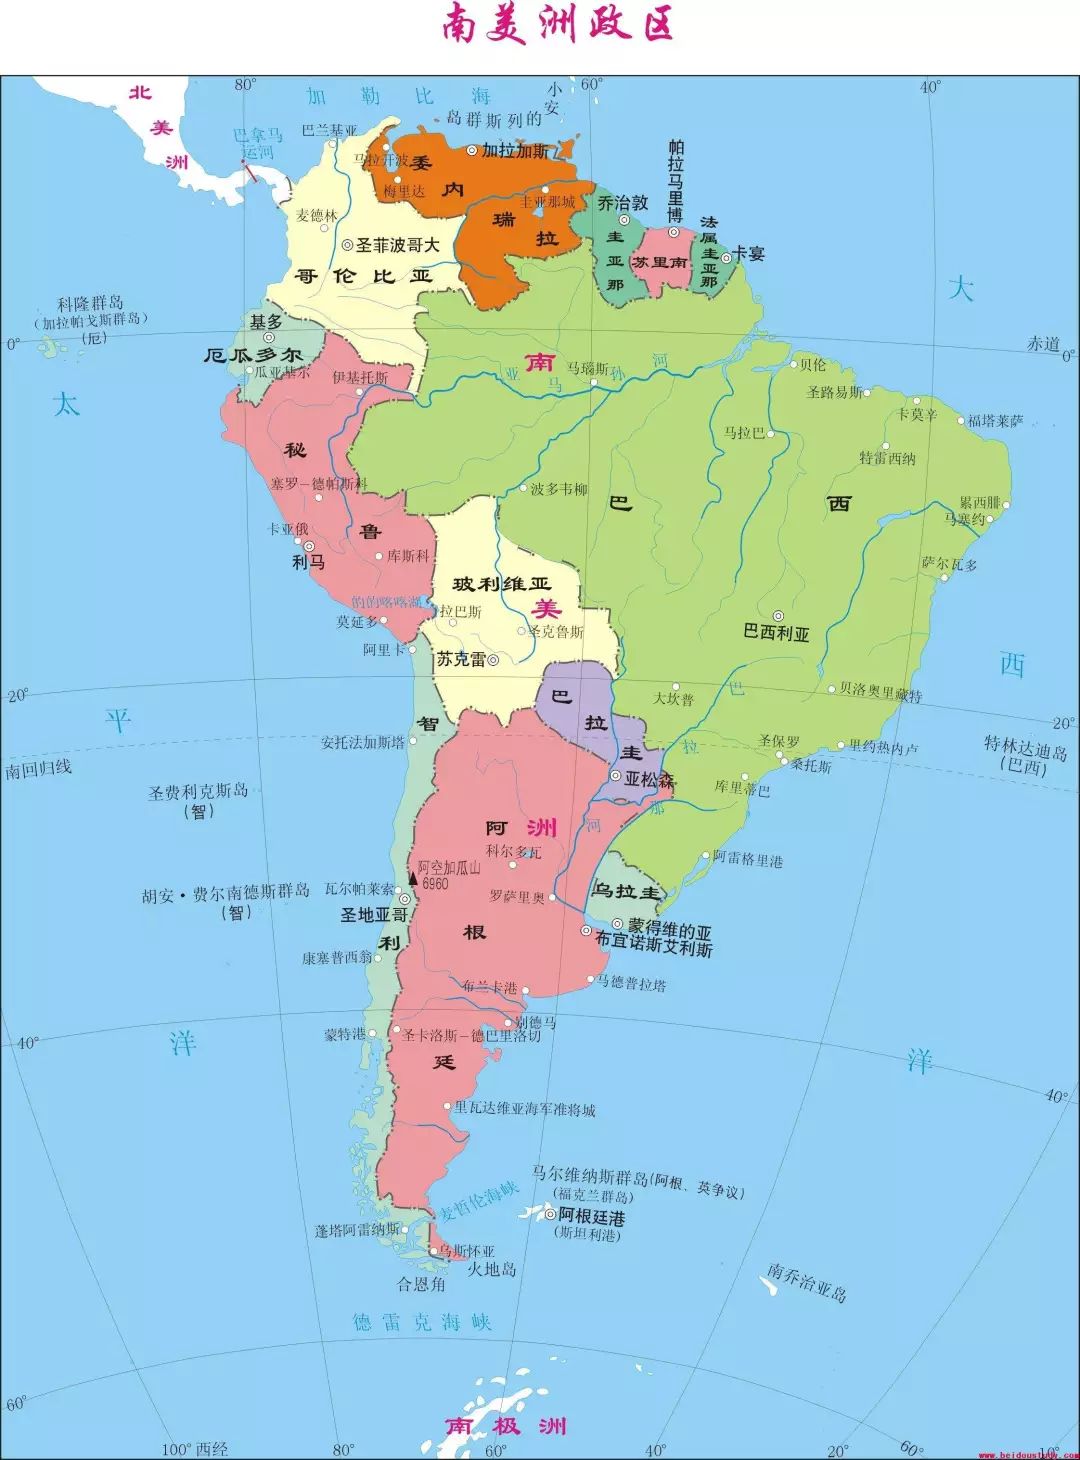 南美的老大是巴西,人口超过两亿,经济世界第9,是 准发达国家——现在